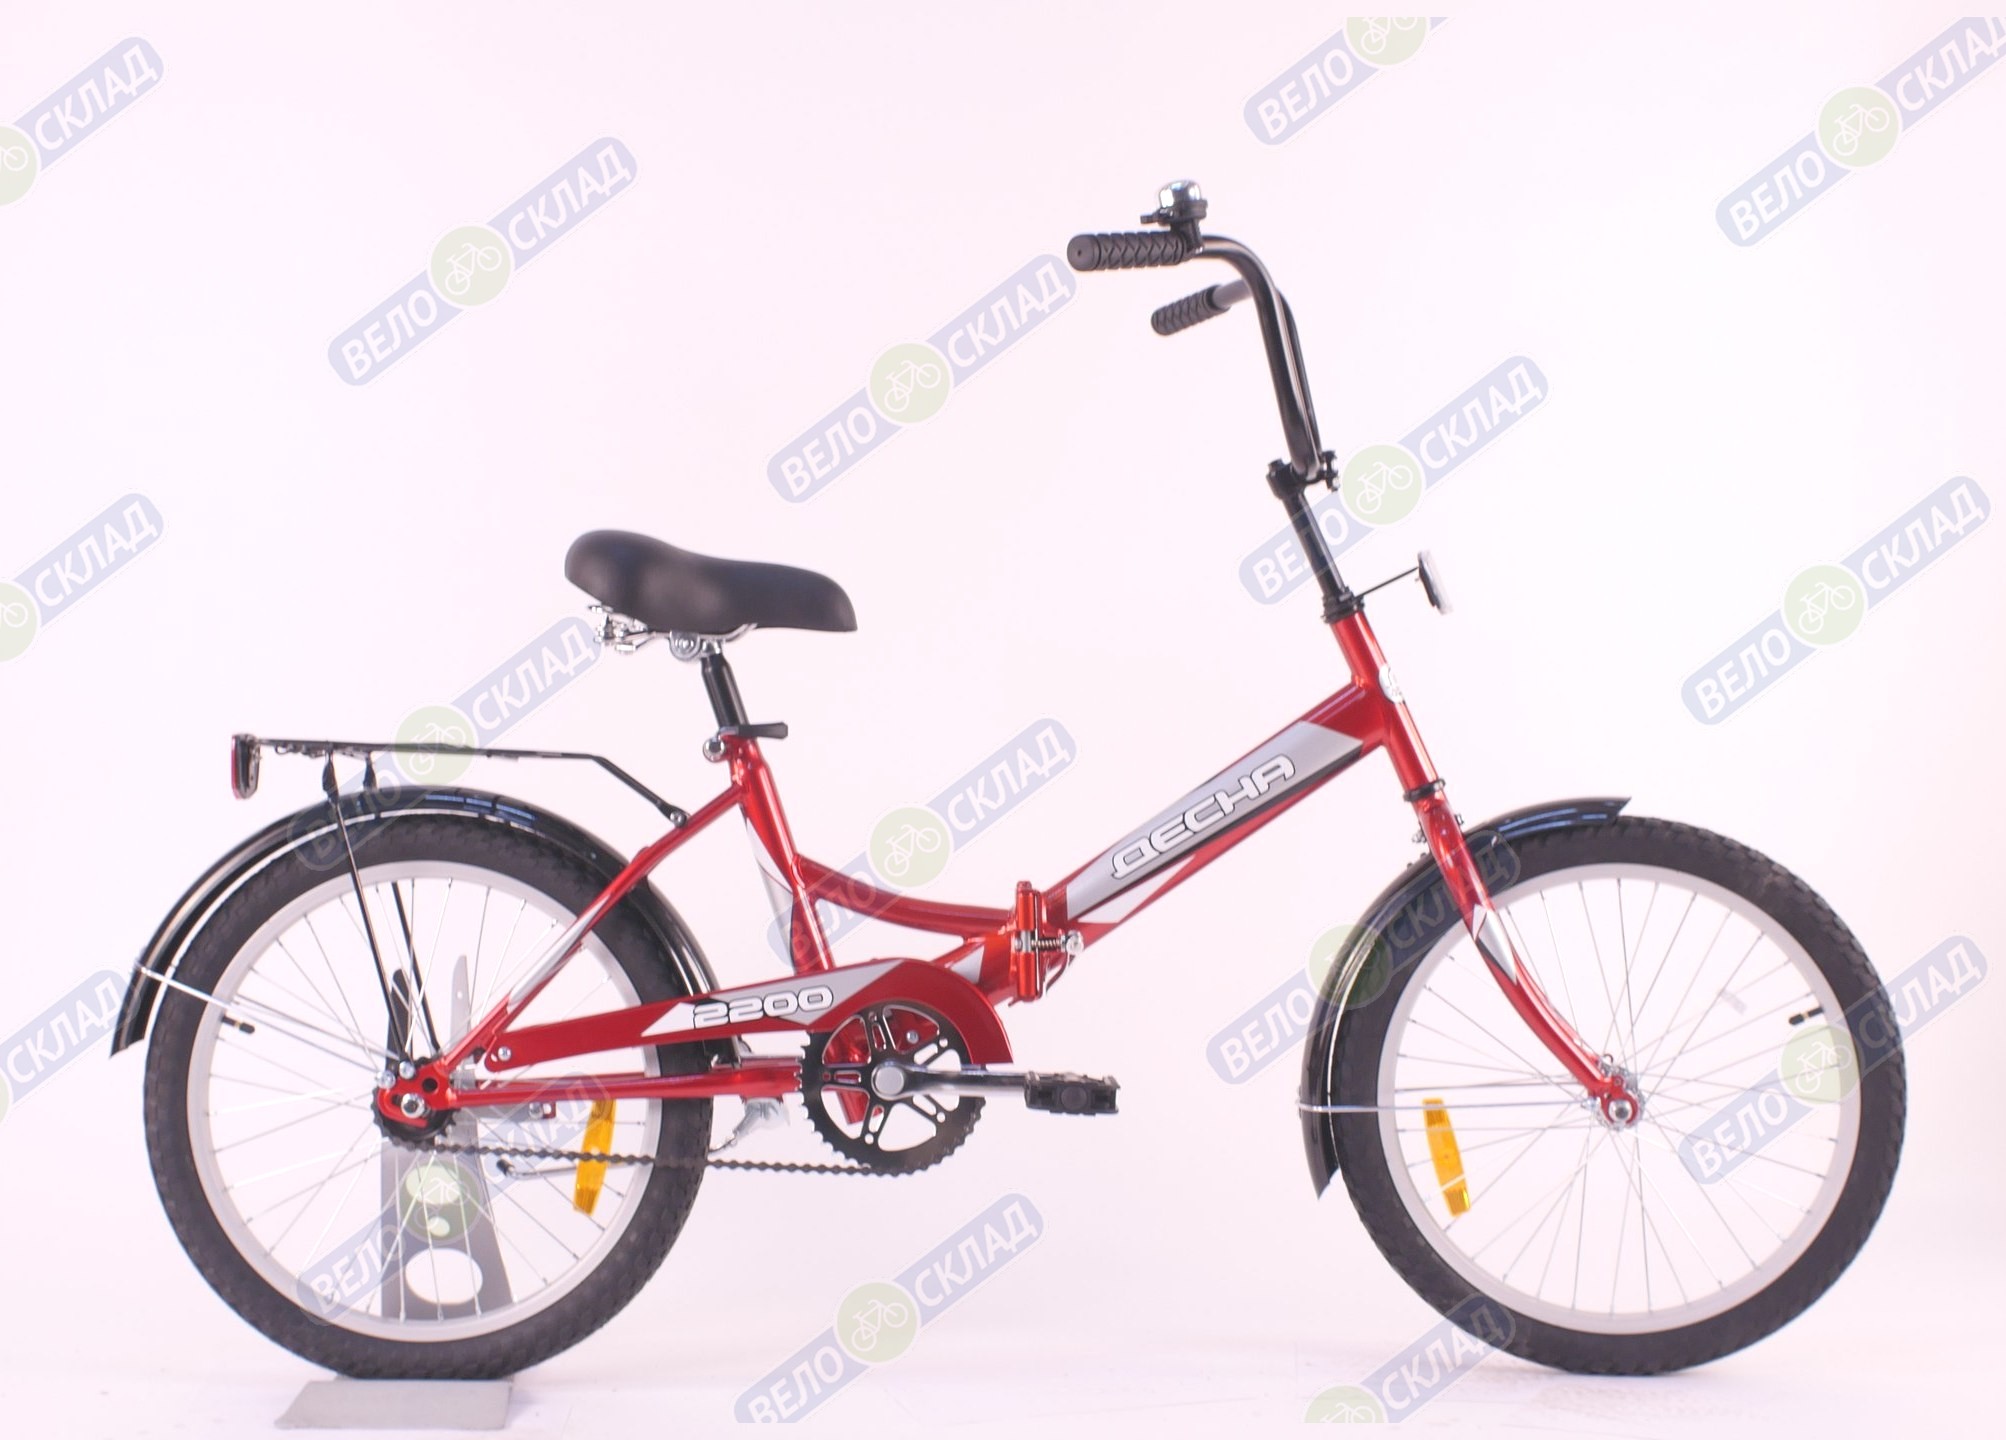 Десна десна складные. Велосипед Десна 2200. Велосипед Десна 2200 z011. Велосипед 20' Десна 2200 (lu086916), красный. Десна 2200 красный дюймов велосипед.